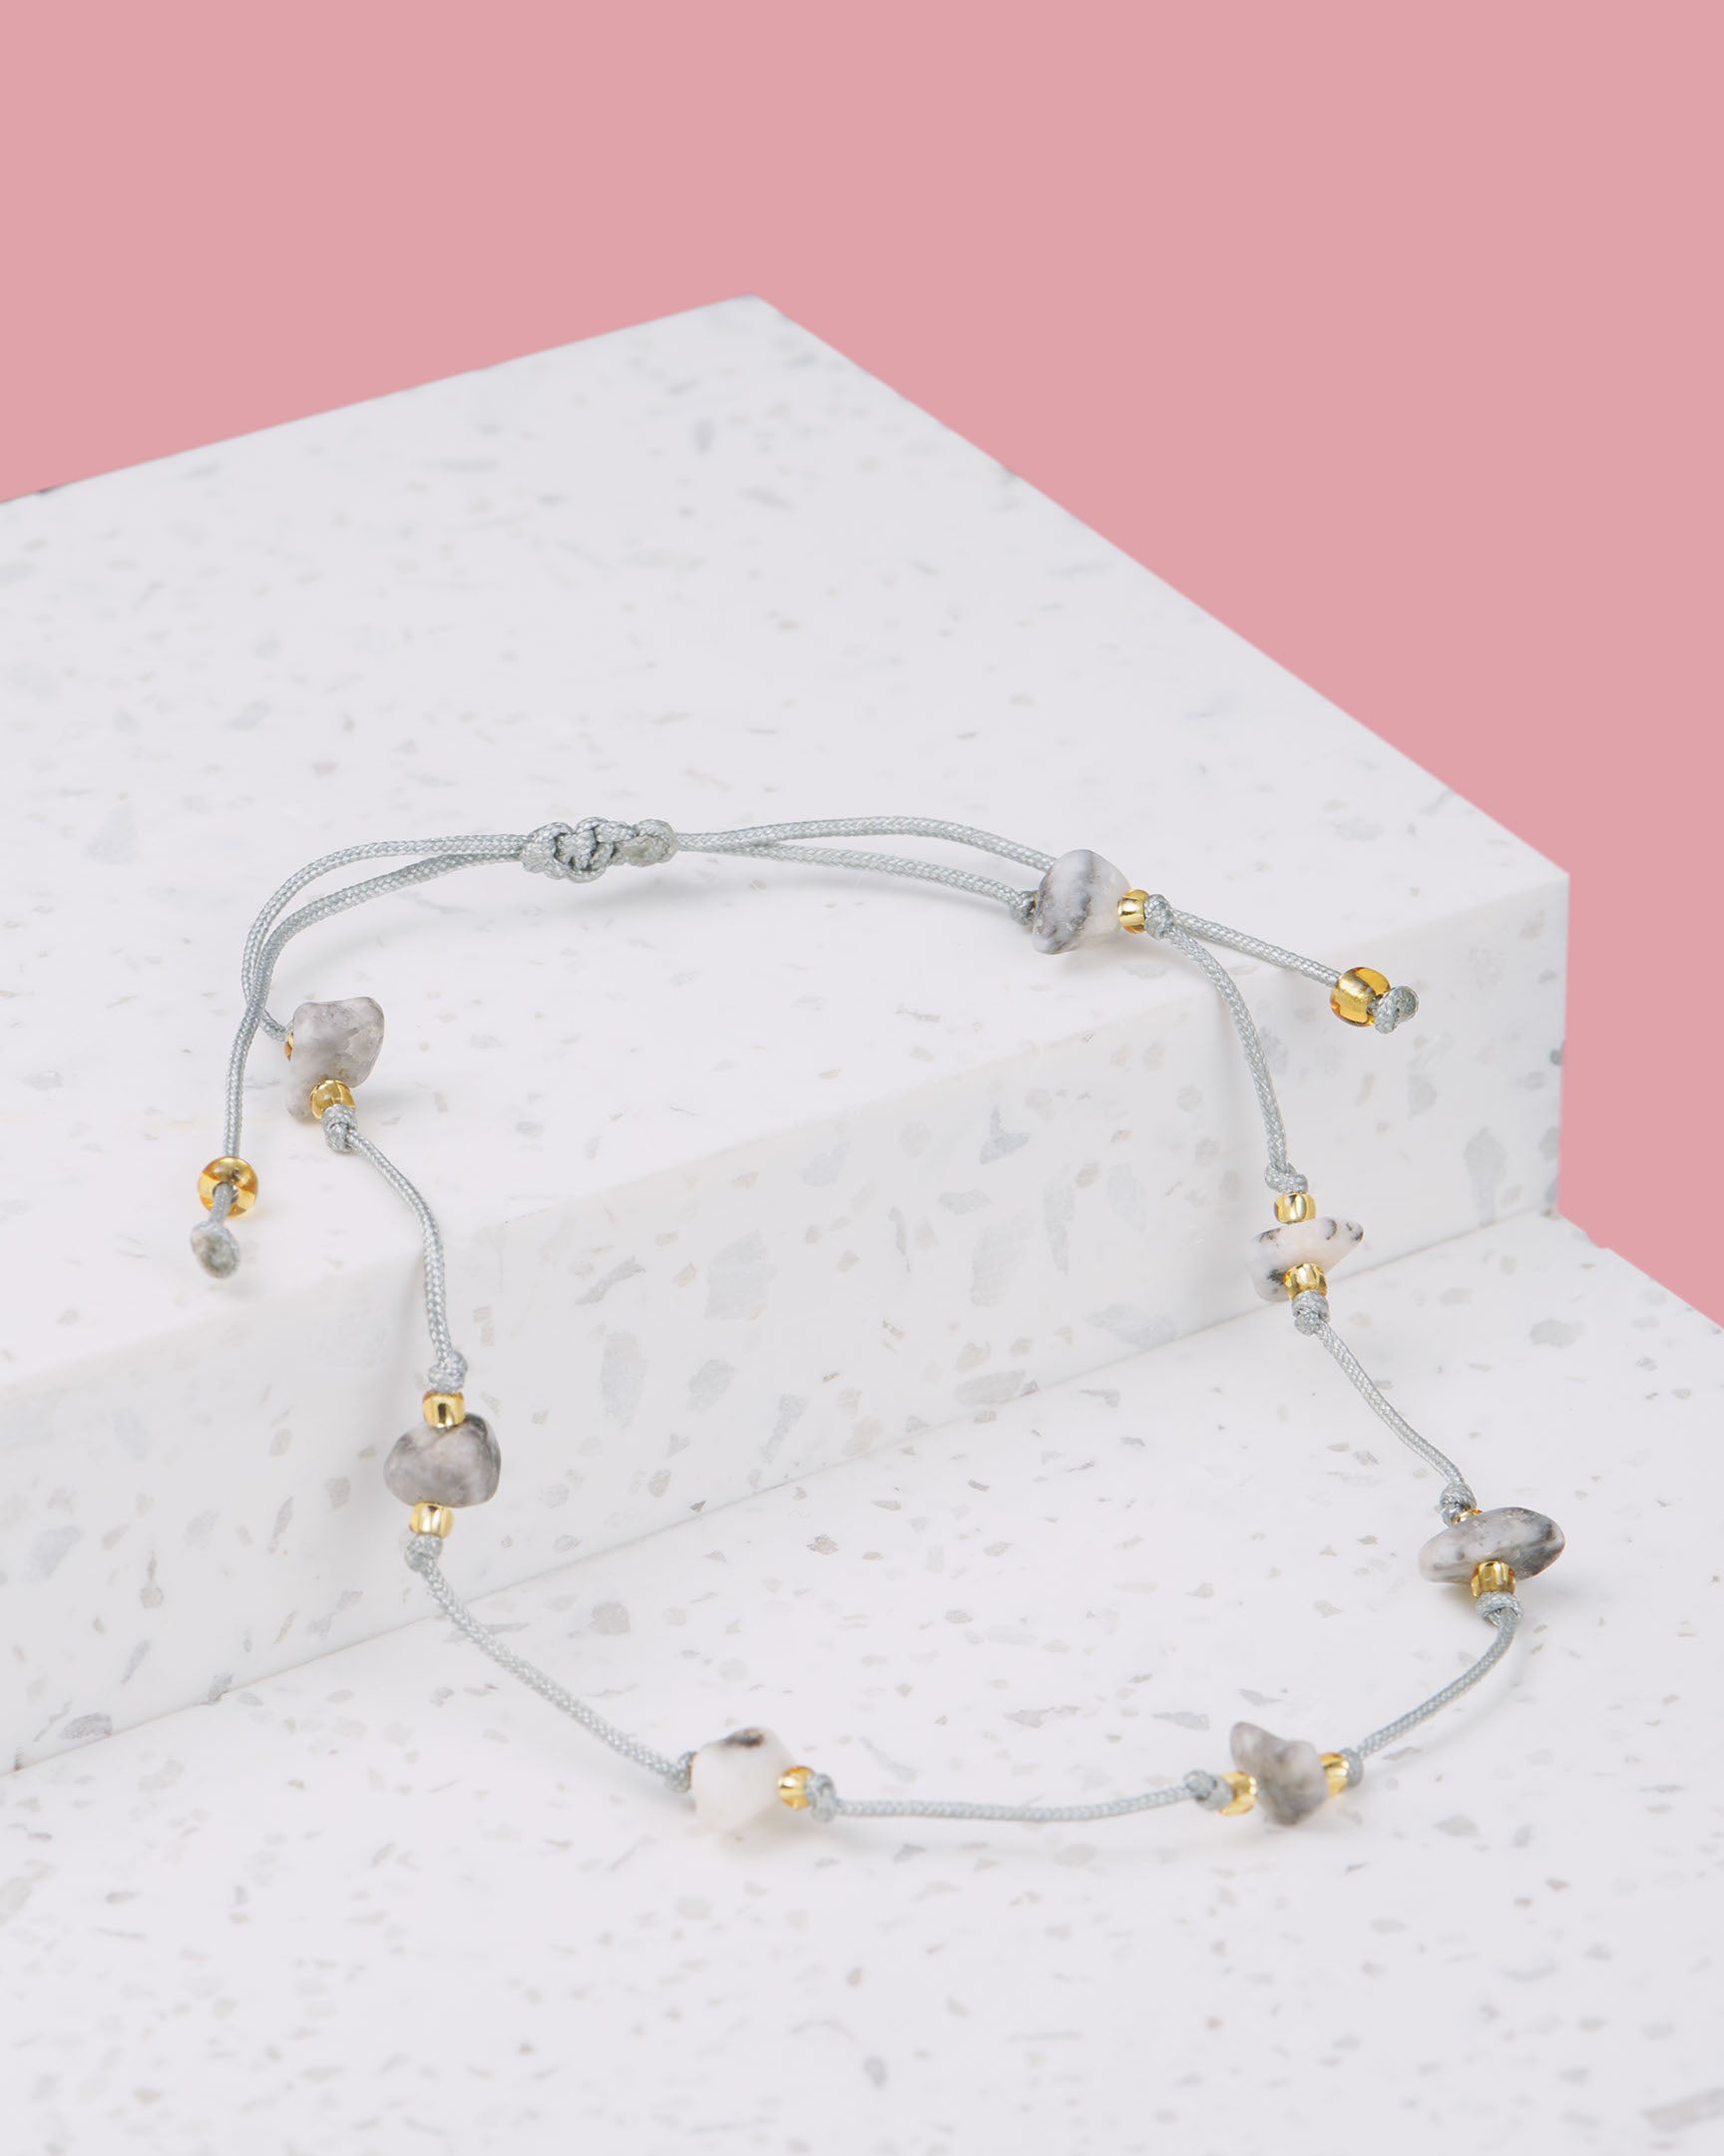 graues Armband mit Steinen | Schmuck aus Bali | VERLAN Jewellery | das perfekte Geschenk für Freundin finden | nickelfreier Schmuck